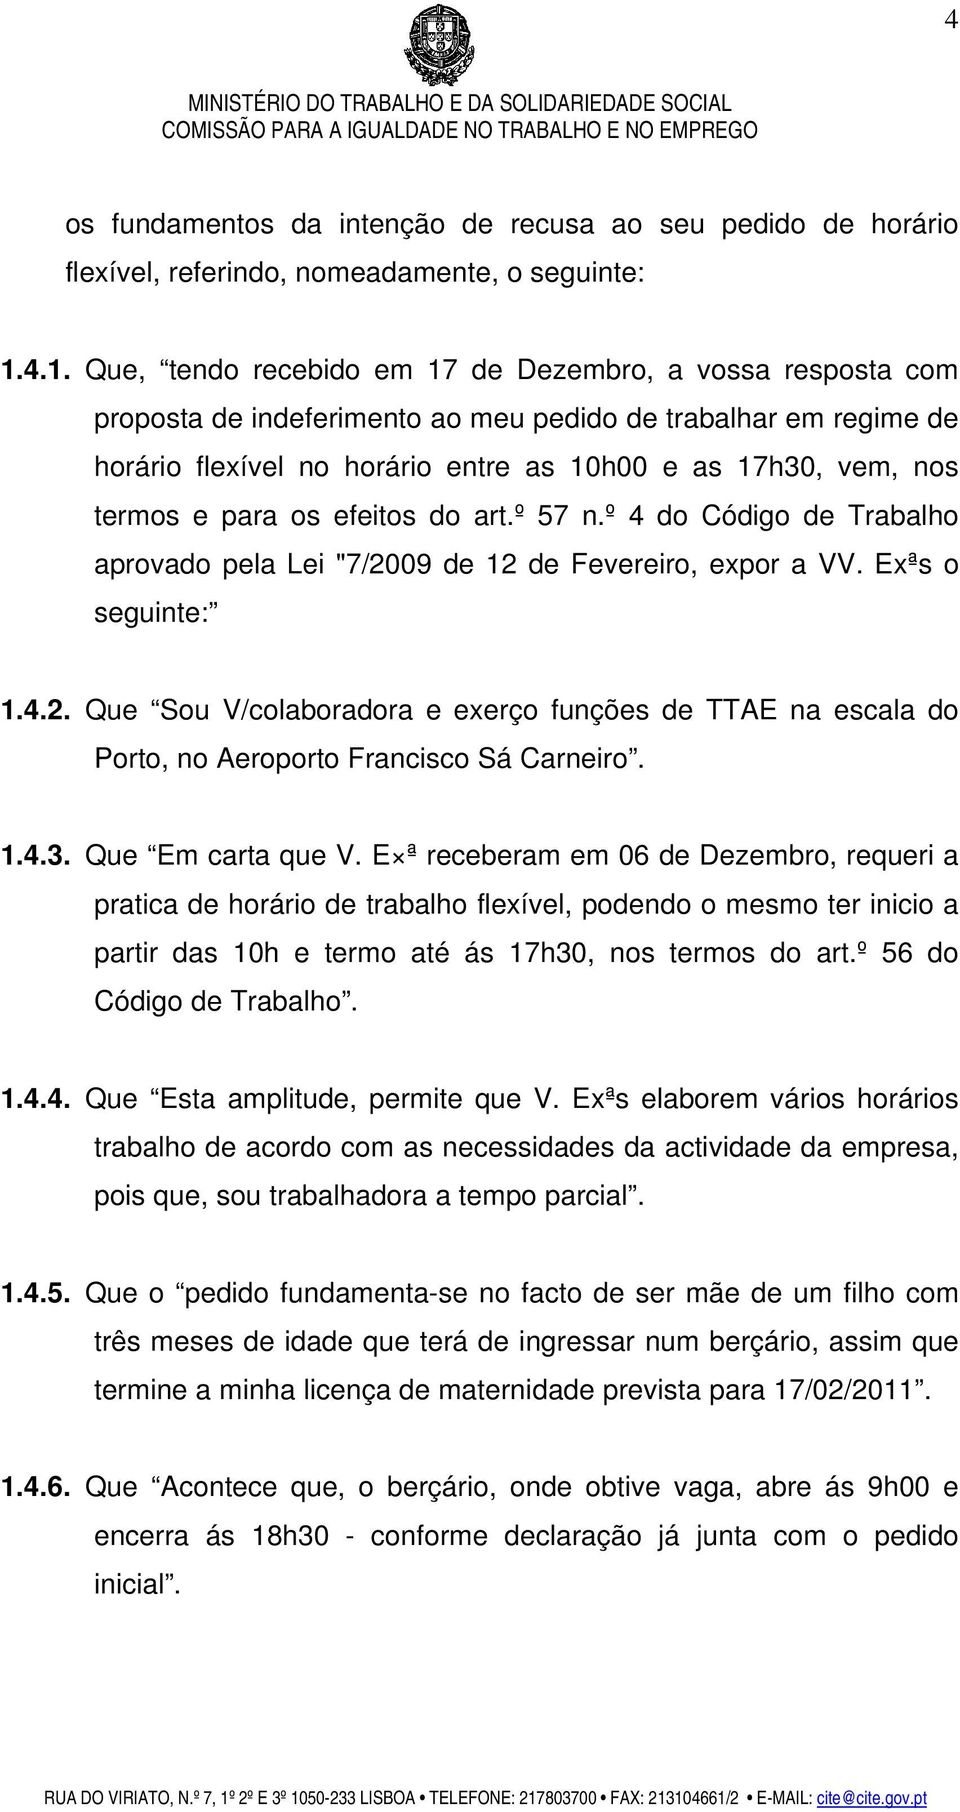 termos e para os efeitos do art.º 57 n.º 4 do Código de Trabalho aprovado pela Lei "7/2009 de 12 de Fevereiro, expor a VV. Exªs o seguinte: 1.4.2. Que Sou V/colaboradora e exerço funções de TTAE na escala do Porto, no Aeroporto Francisco Sá Carneiro.